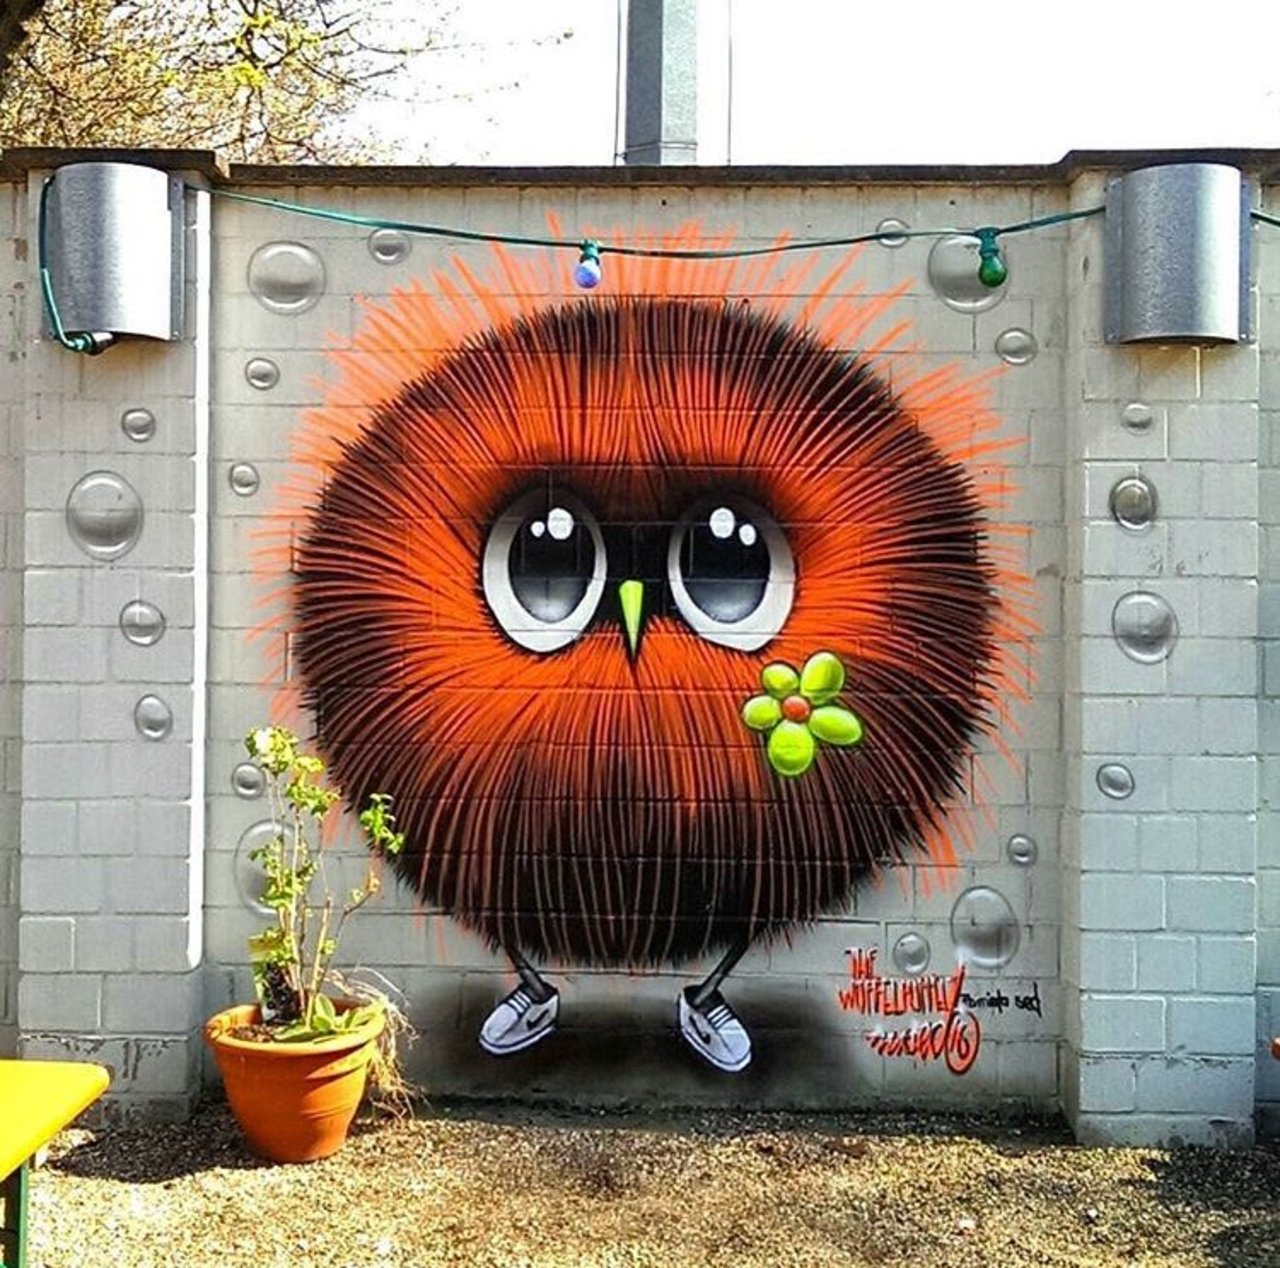 Street Art by Mistersed Cologne, Germany #art #mural #graffiti #streetart https://t.co/FsHmYBCi1R